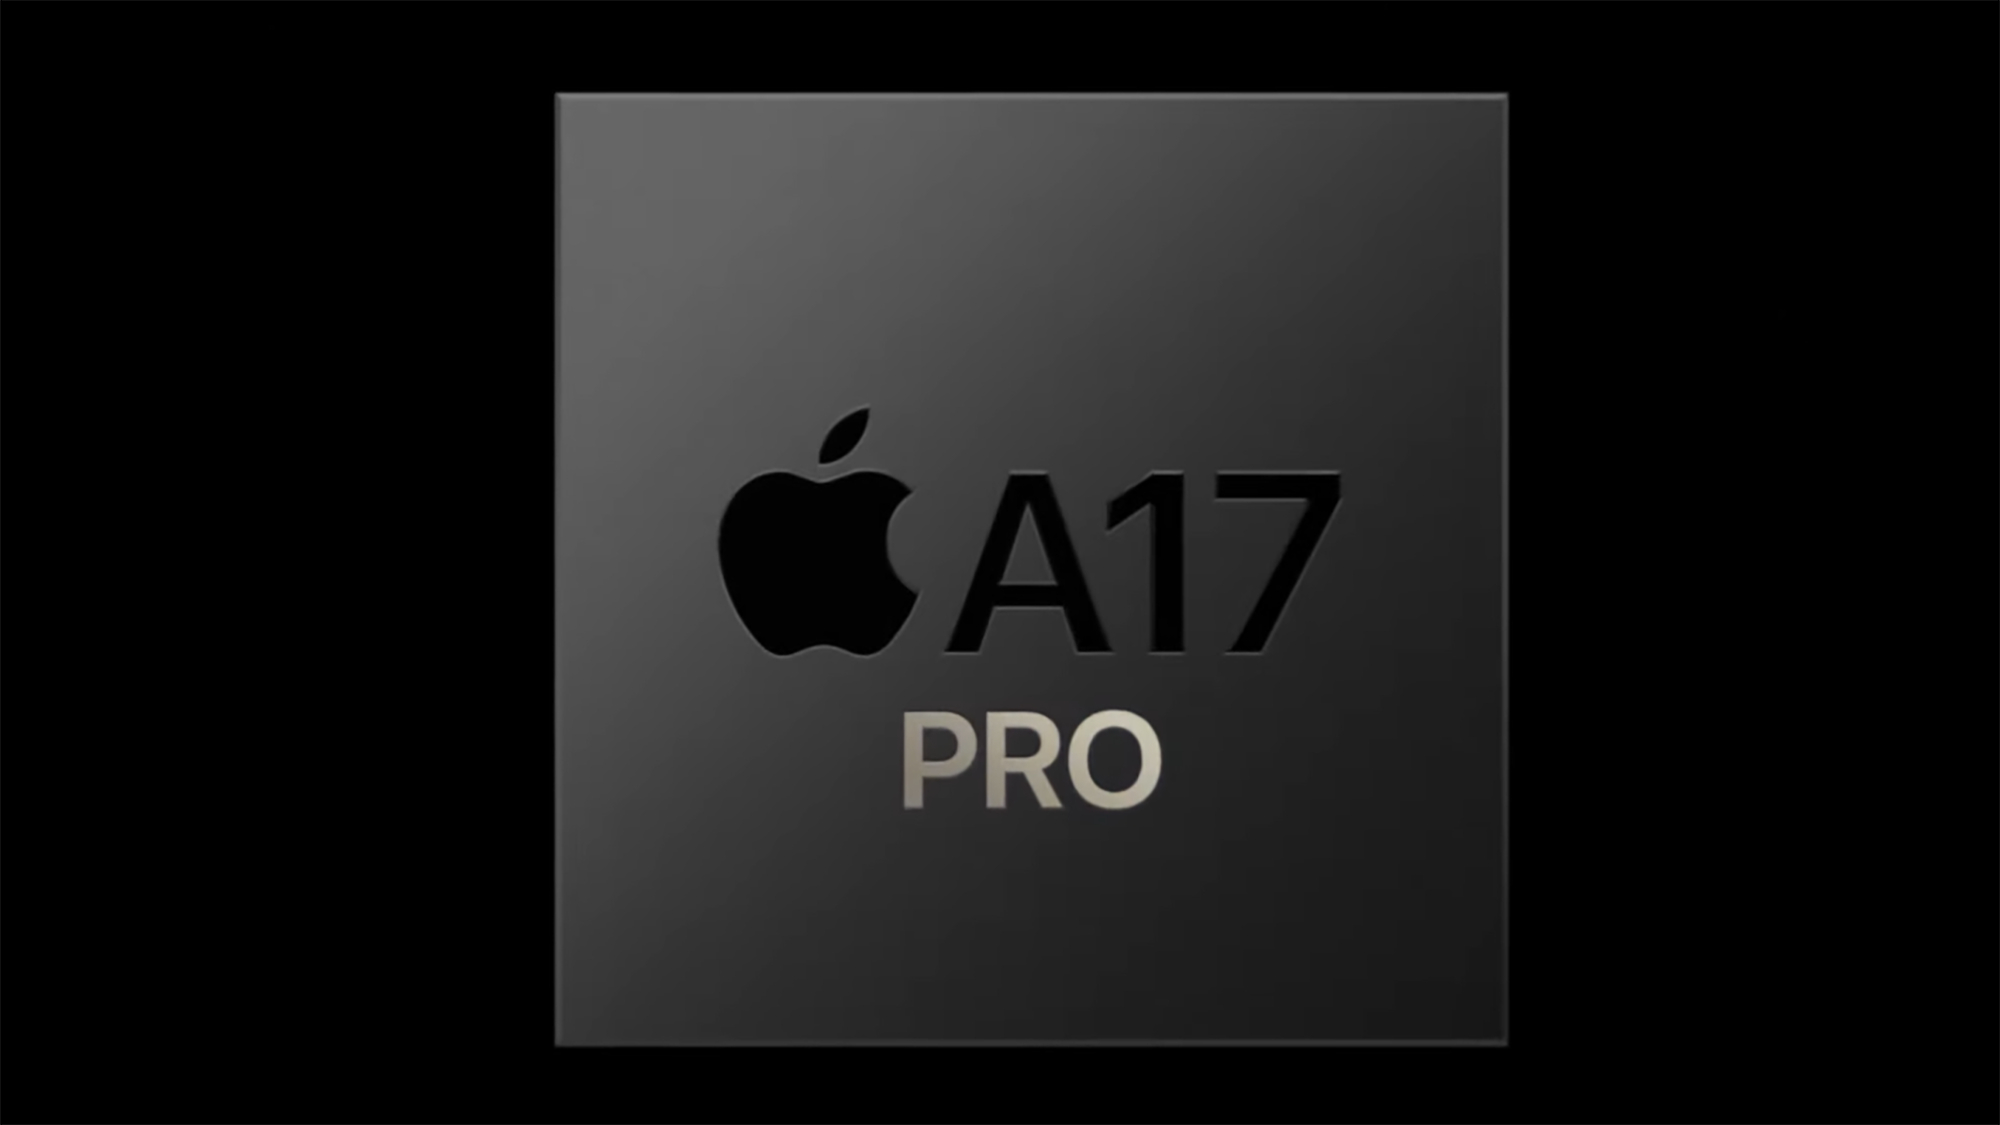 L'Apple A17 Pro est à la hauteur des processeurs Intel et AMD, et c'est une excellente nouvelle pour l'Apple M3